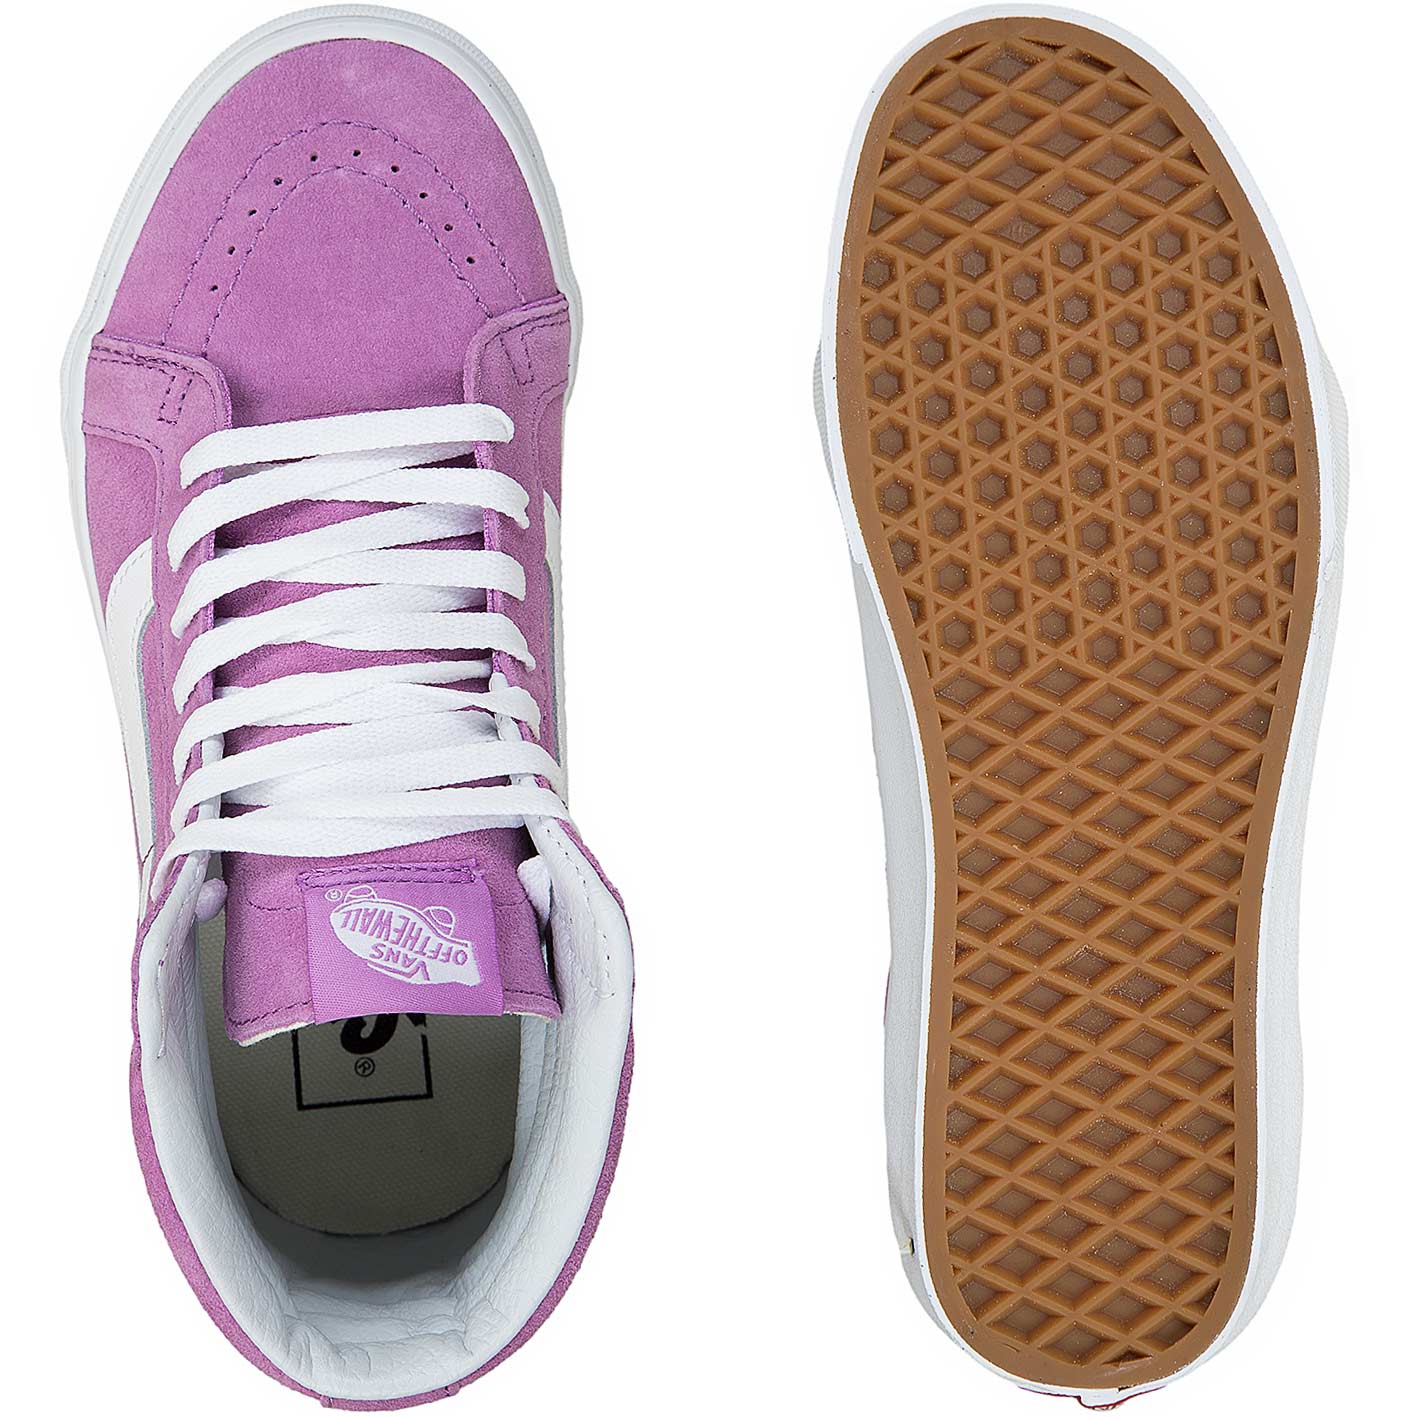 ☆ Vans Damen-Sneaker SK8-Hi pink/weiß - hier bestellen!